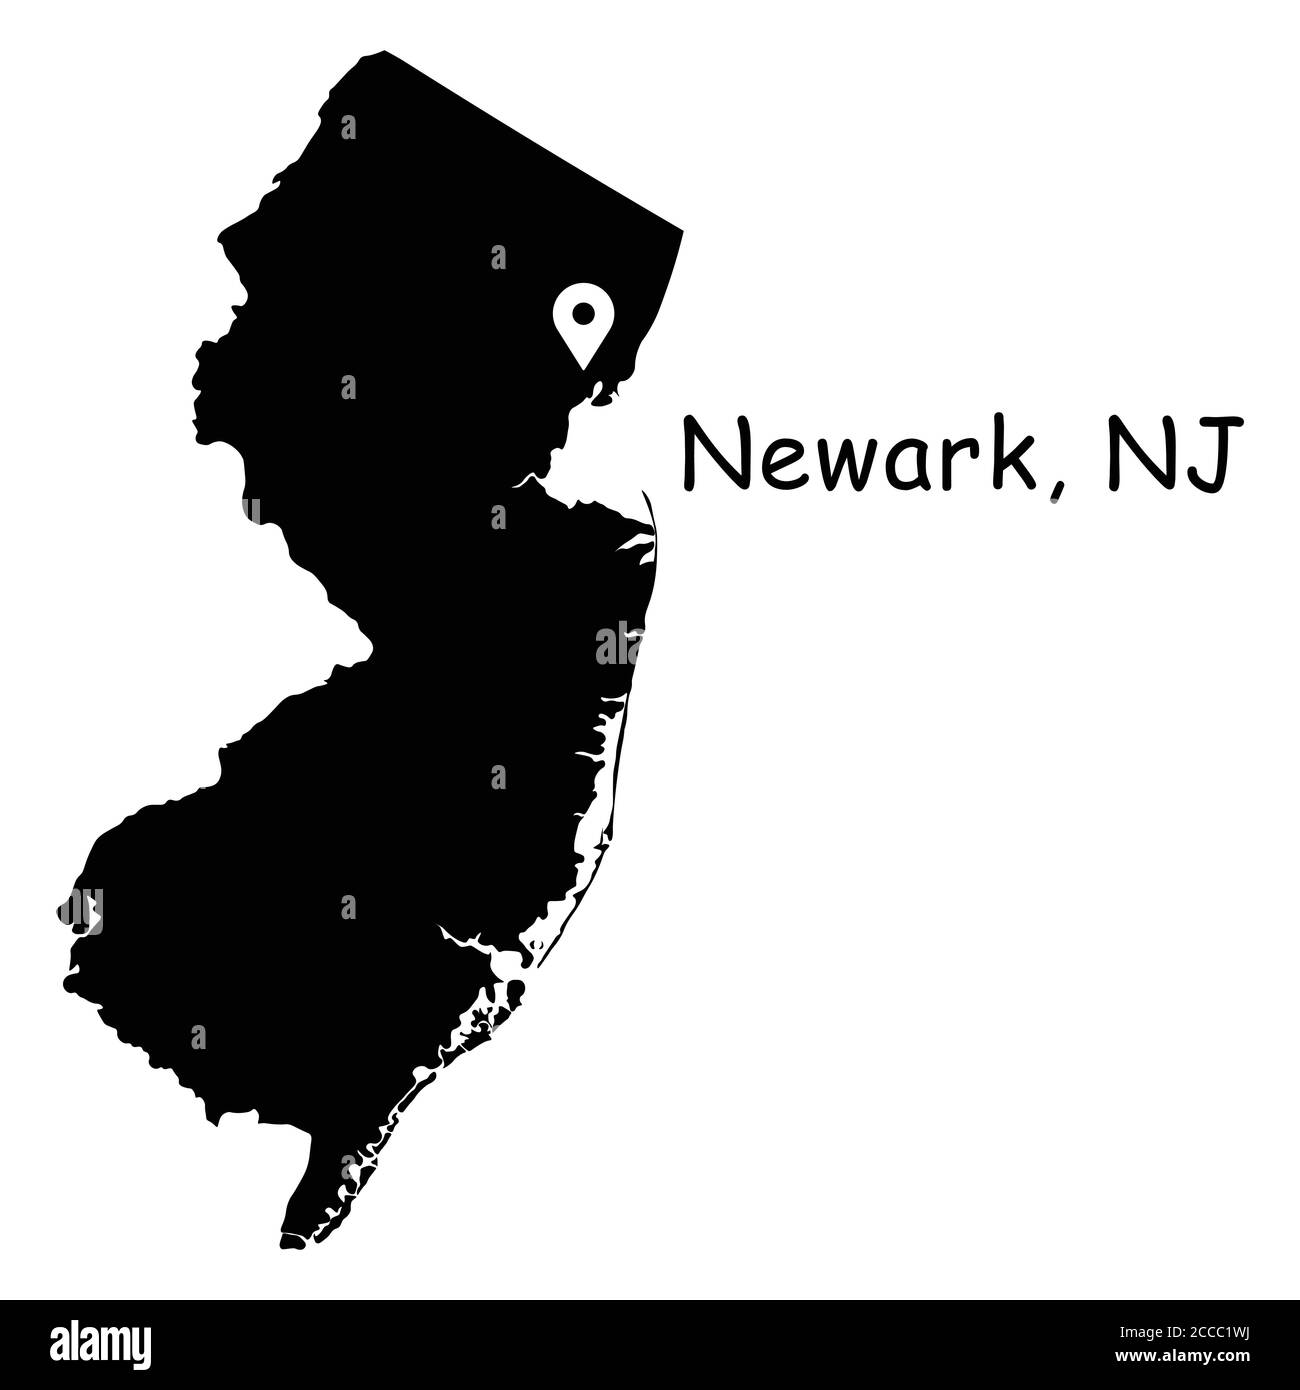 Newark sur la carte de l'État du New Jersey. Carte détaillée de l'état du NJ avec broche d'emplacement sur Newark City. Carte vectorielle de silhouette noire isolée sur fond blanc. Illustration de Vecteur